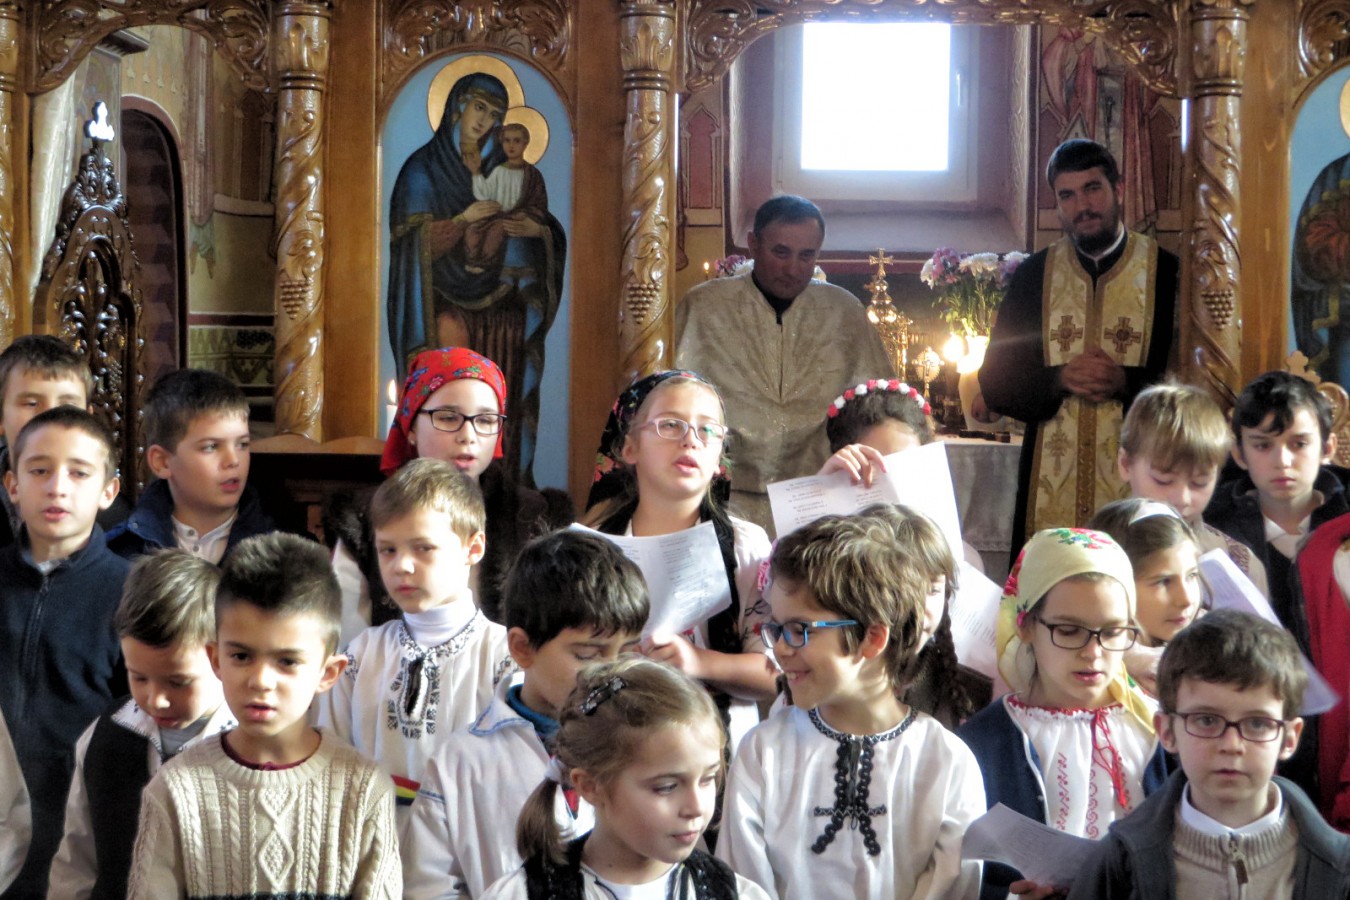 Colindători de la Colegiul Național Ortodox în parohia Sucutard